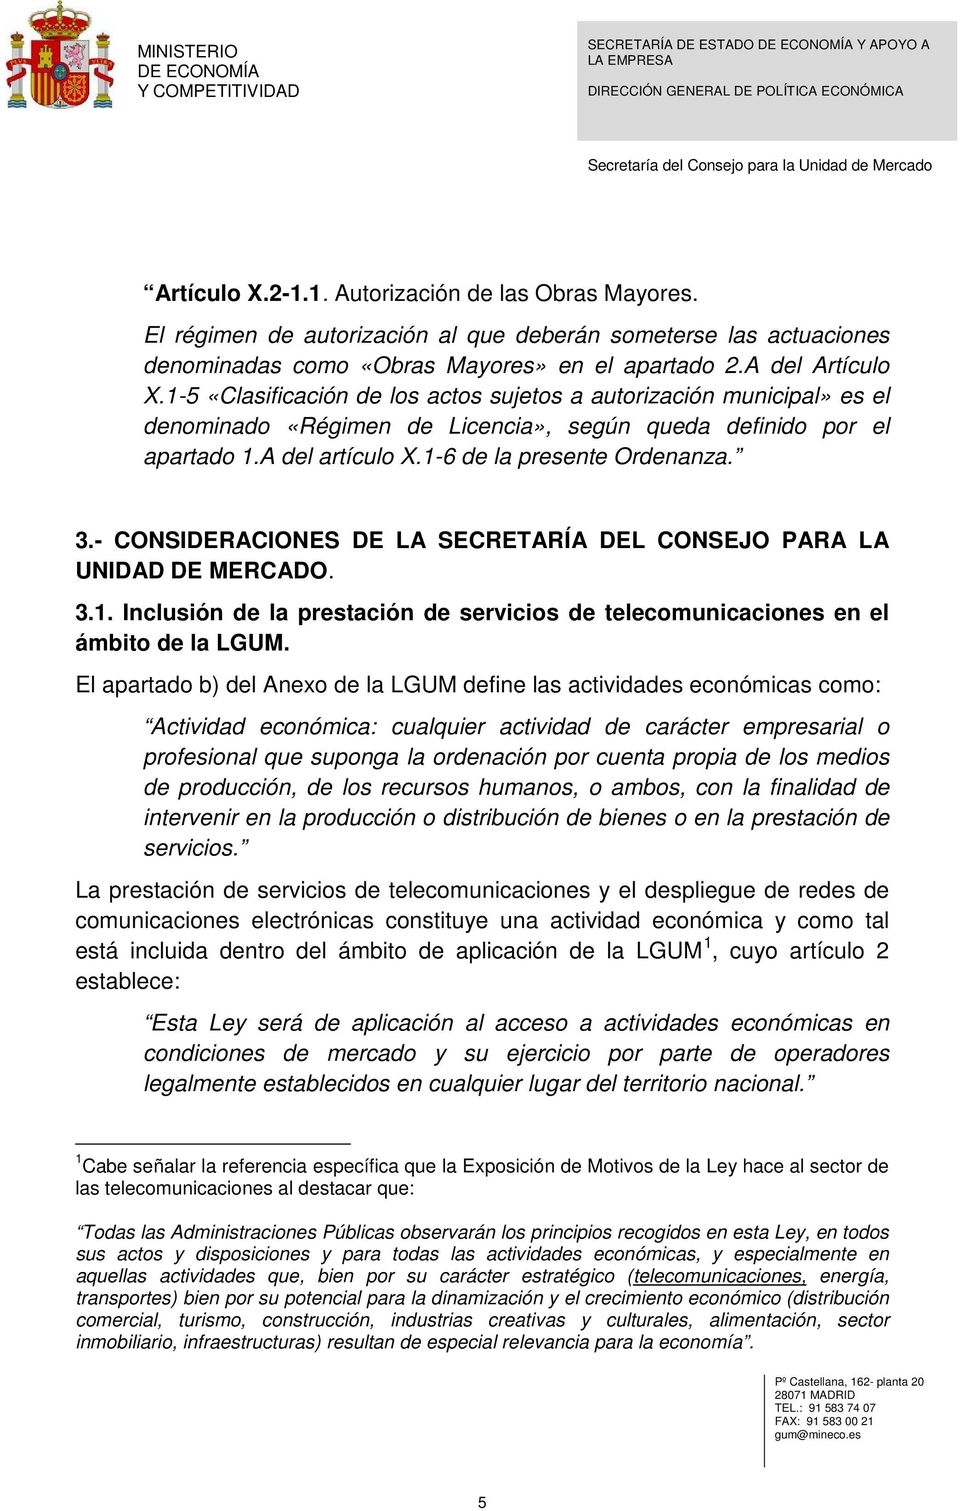 - CONSIDERACIONES DE LA SECRETARÍA DEL CONSEJO PARA LA UNIDAD DE MERCADO. 3.1. Inclusión de la prestación de servicios de telecomunicaciones en el ámbito de la LGUM.